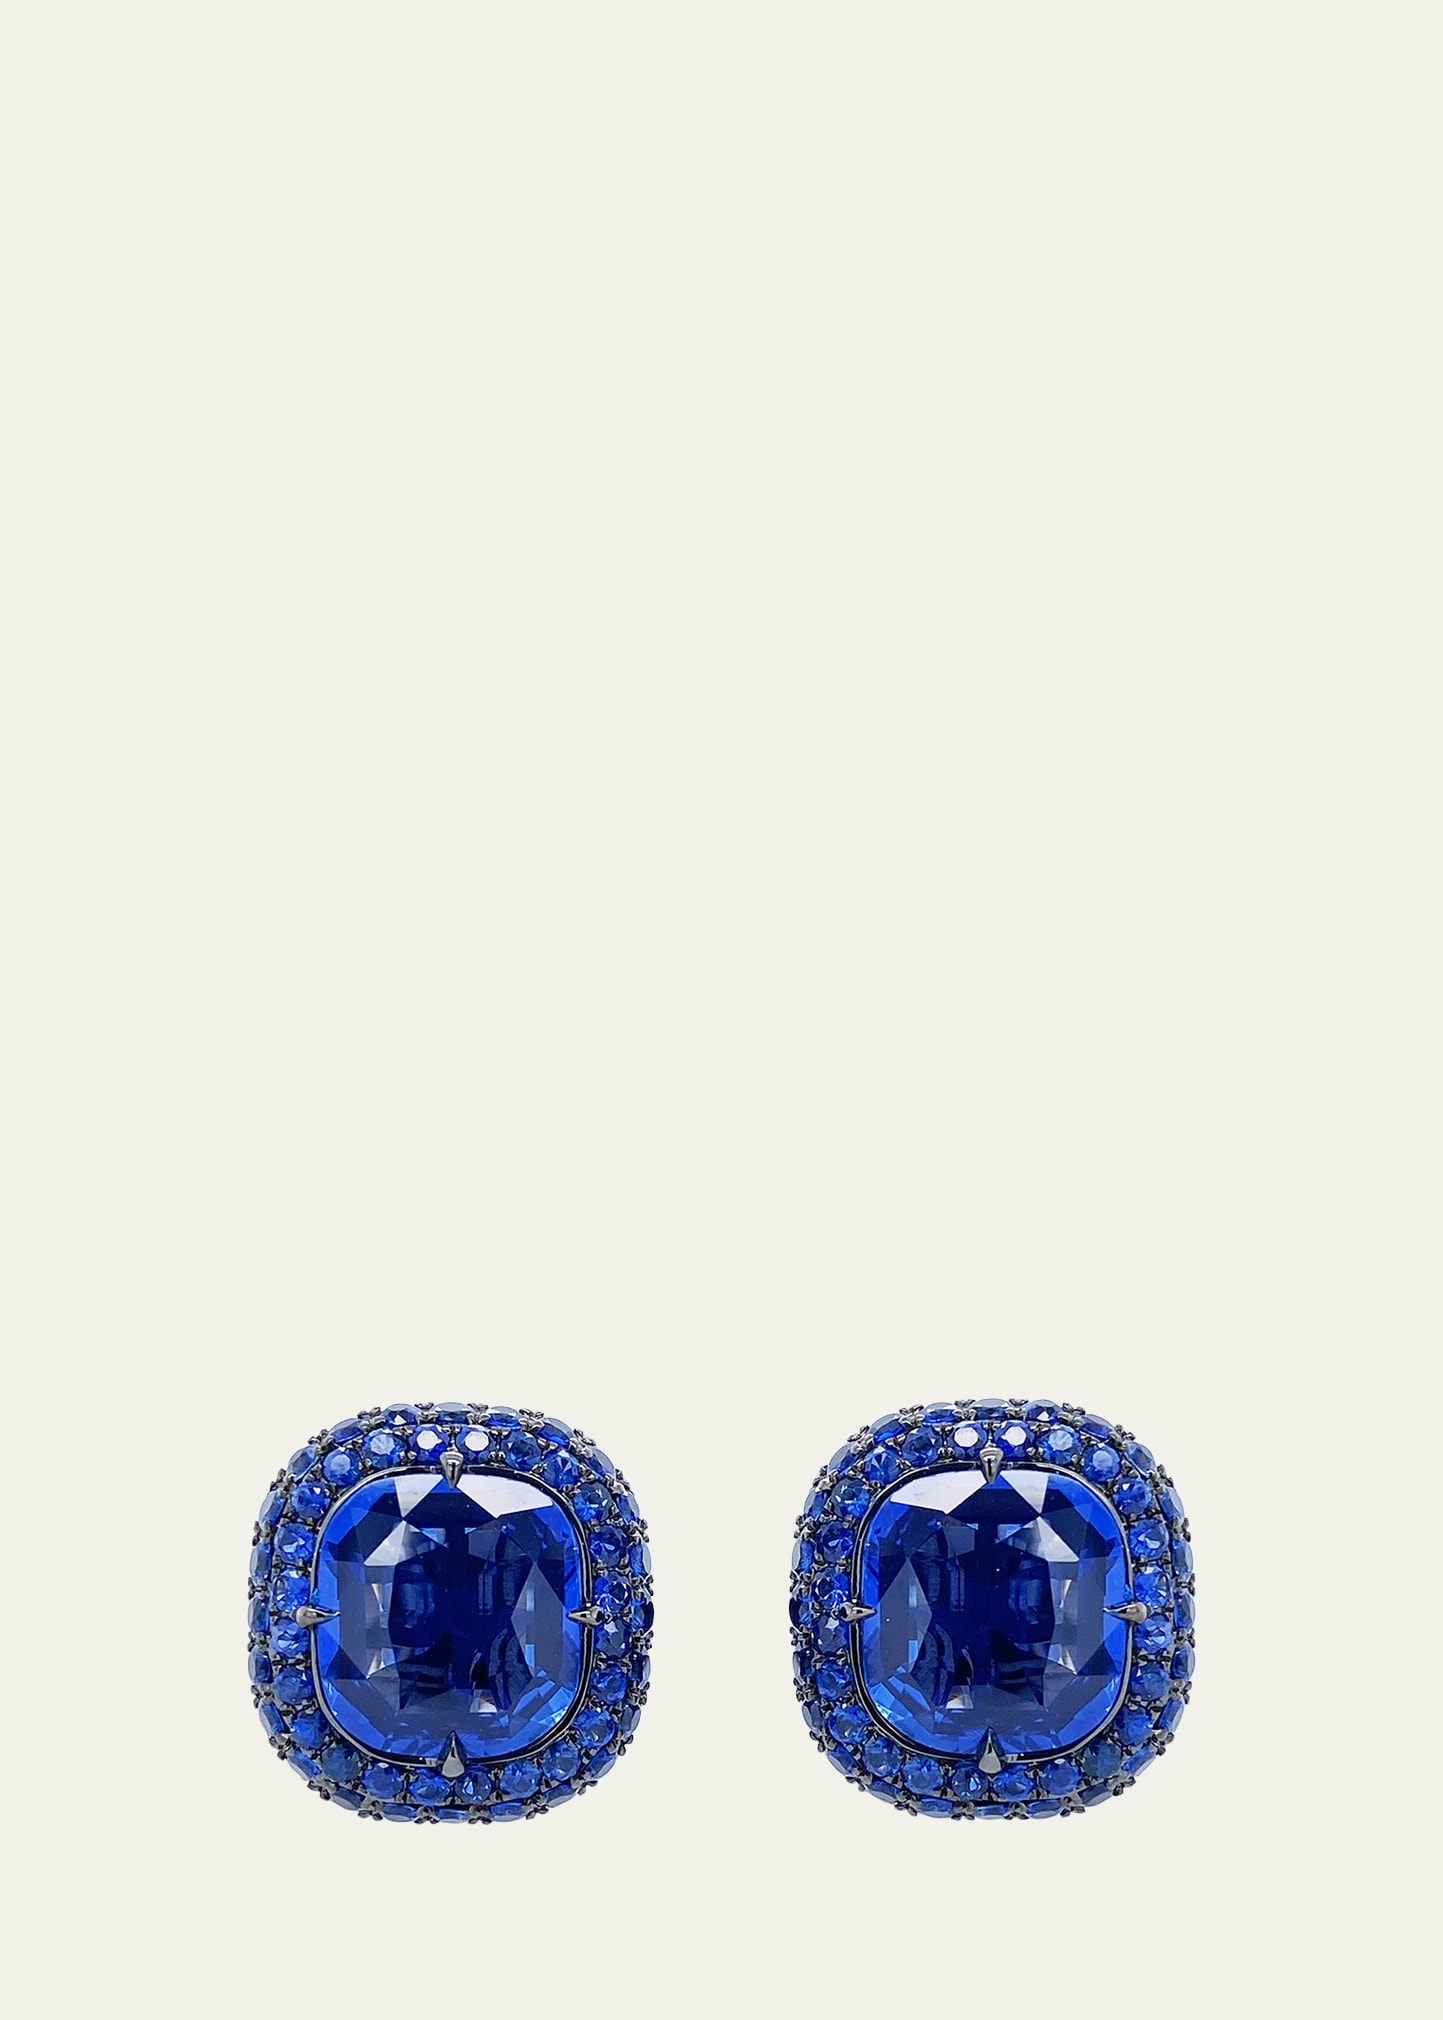 Cushion-Cut Sapphire Earrings